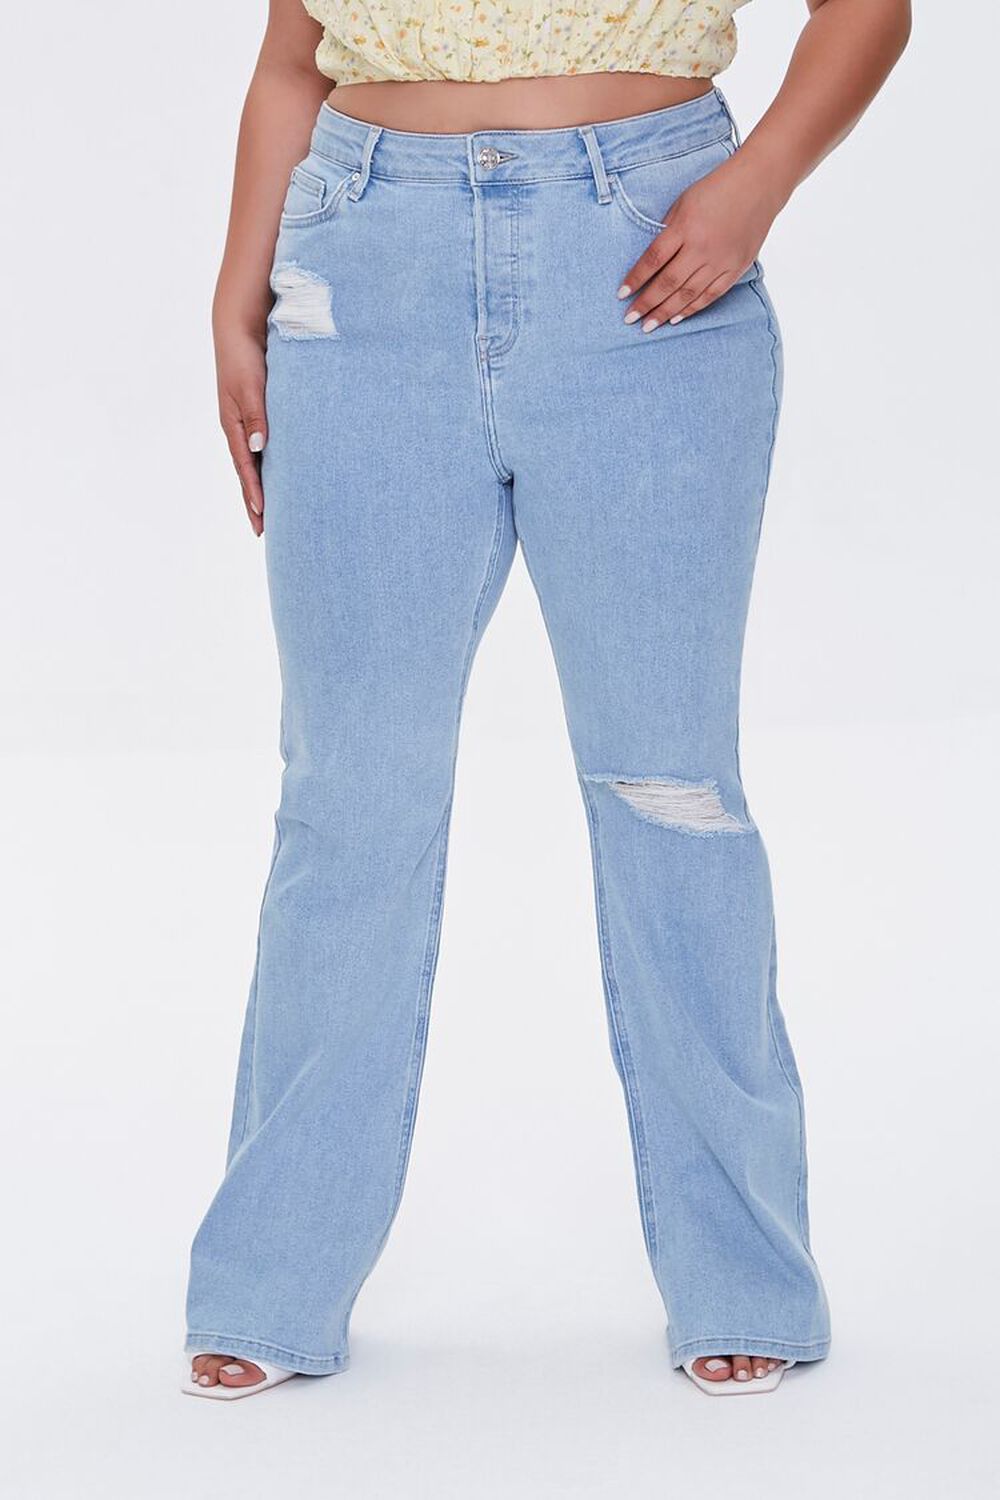 LIGHT DENIM Frayed Flare Jeans, image 2